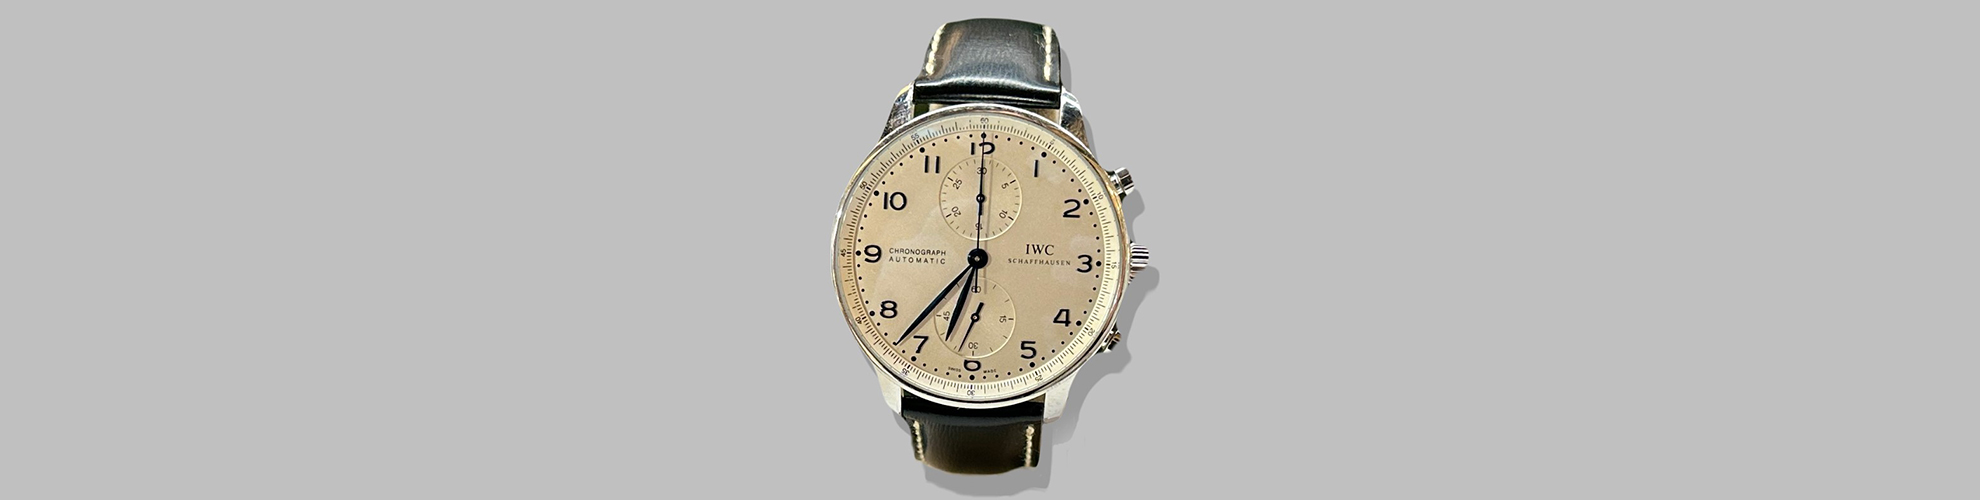 Uhr, IWC Schaffhausen: Ein eleganter Zeitmesser mit przisem Uhrwerk und stilvollem Design.